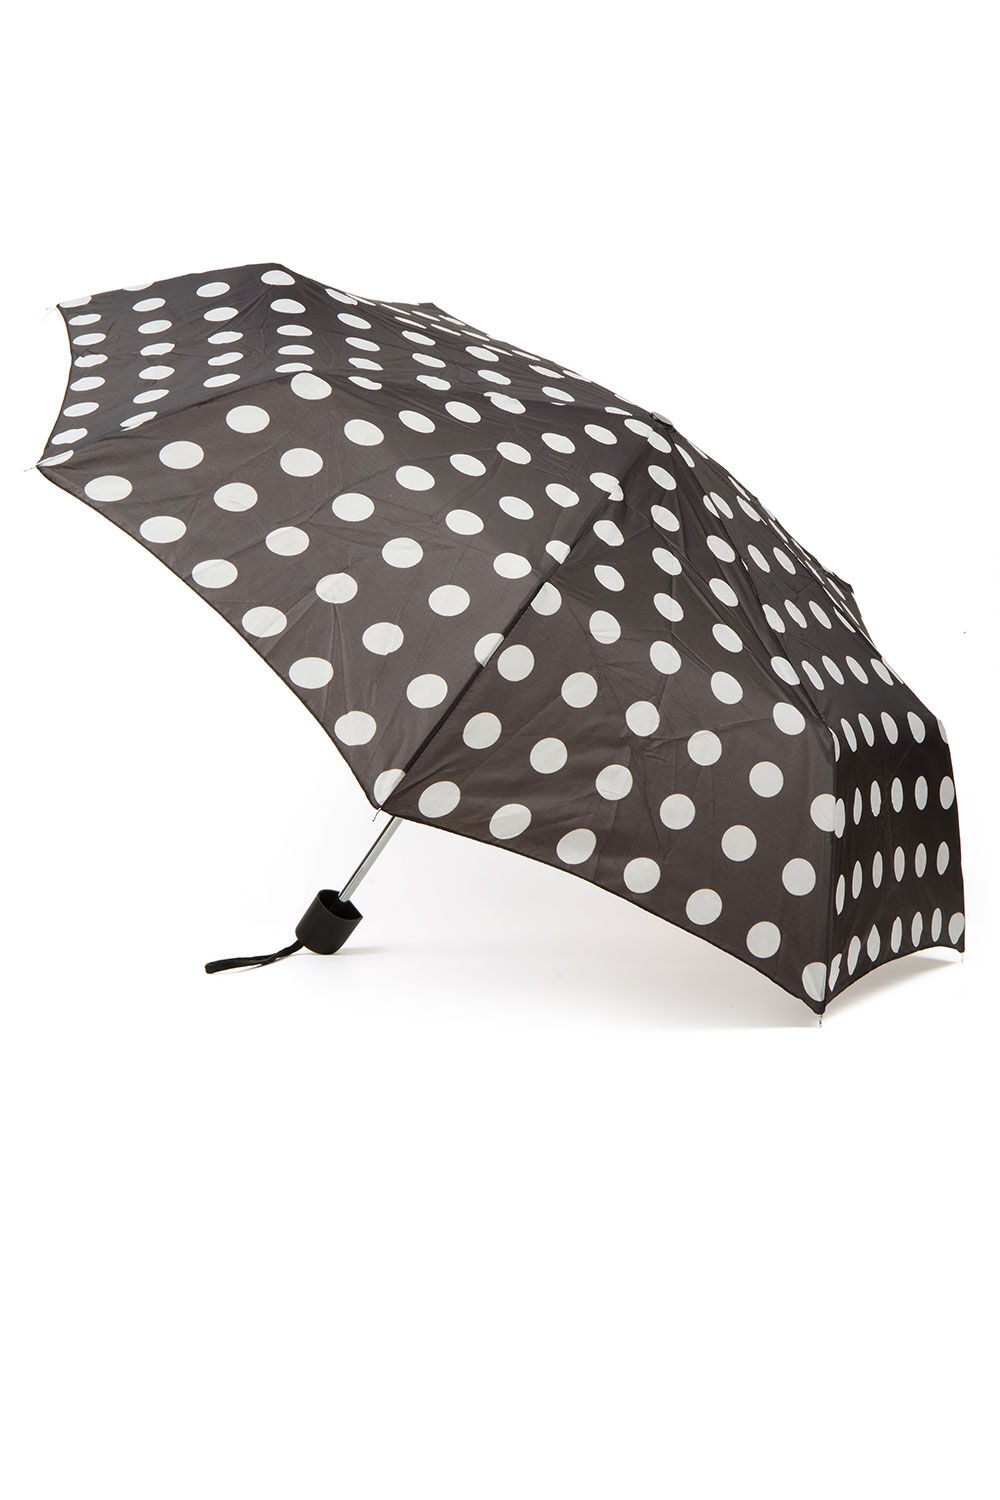 Bonmarche Black Spot Design Umbrella, Size: One Size